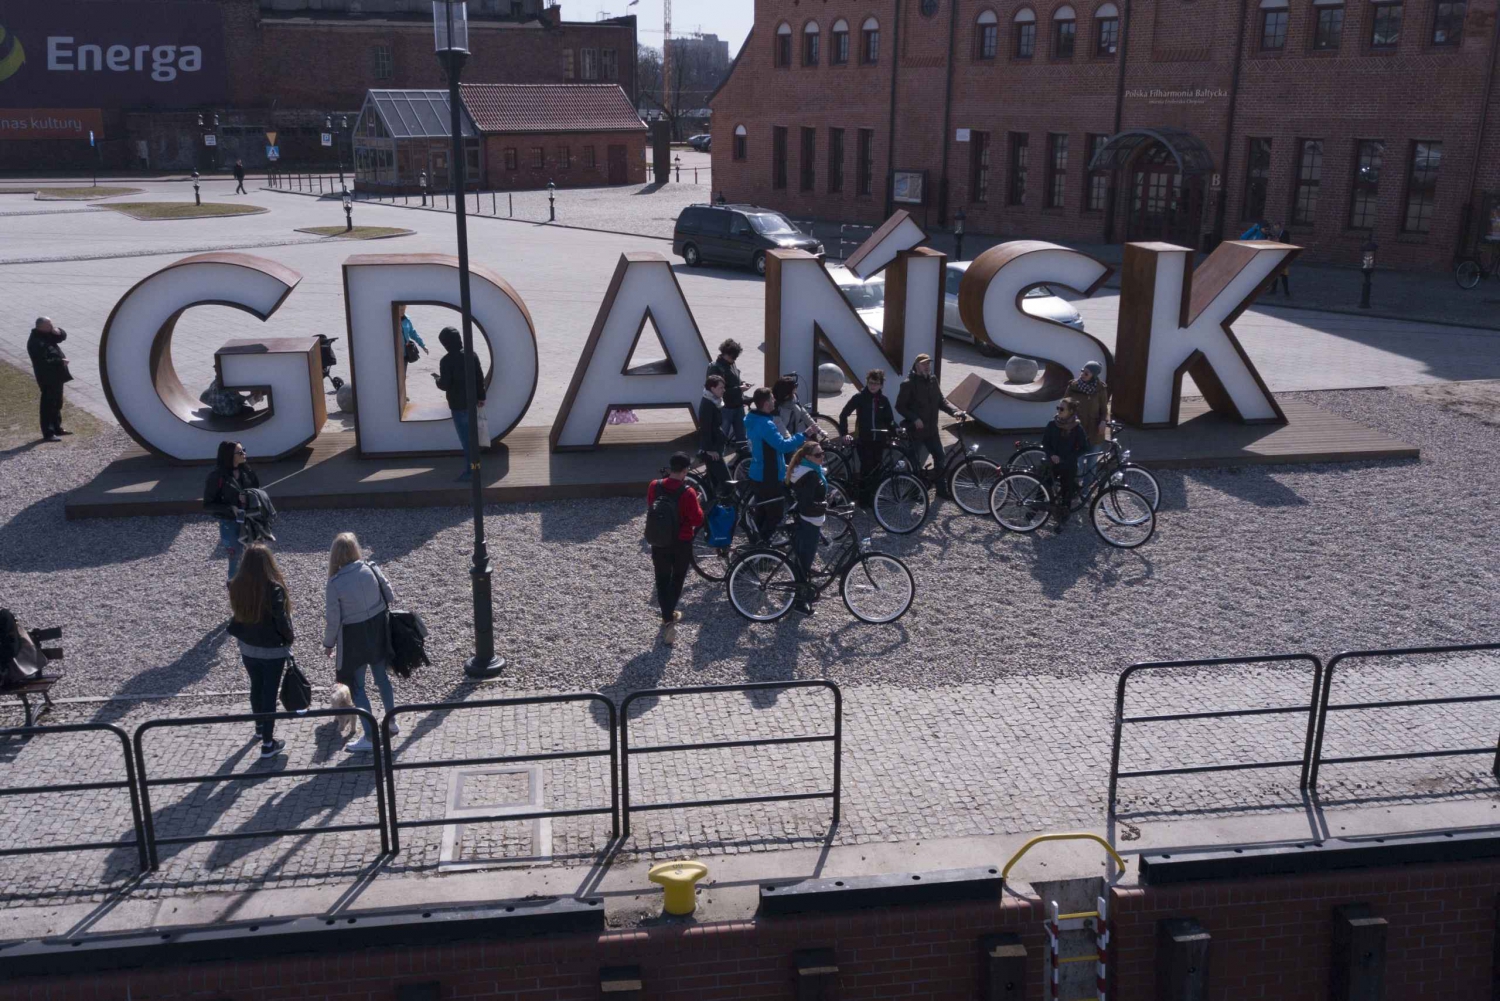 Gdansk Private Bike Tour